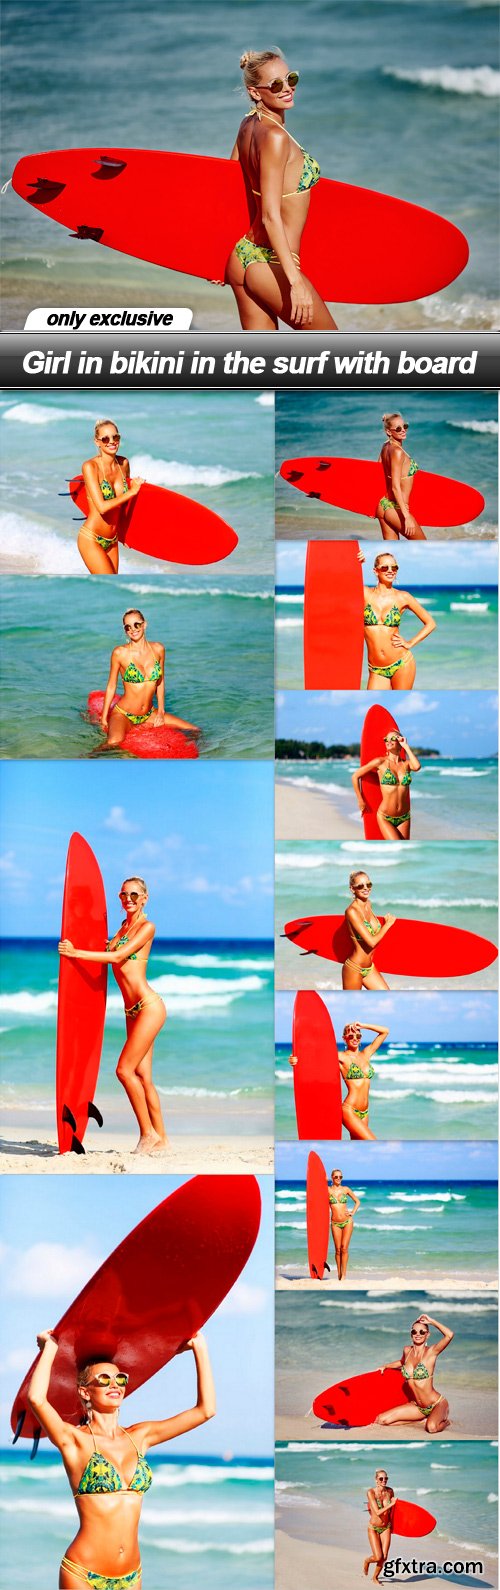 Girl in bikini in the surf with board - 12 UHQ JPEG